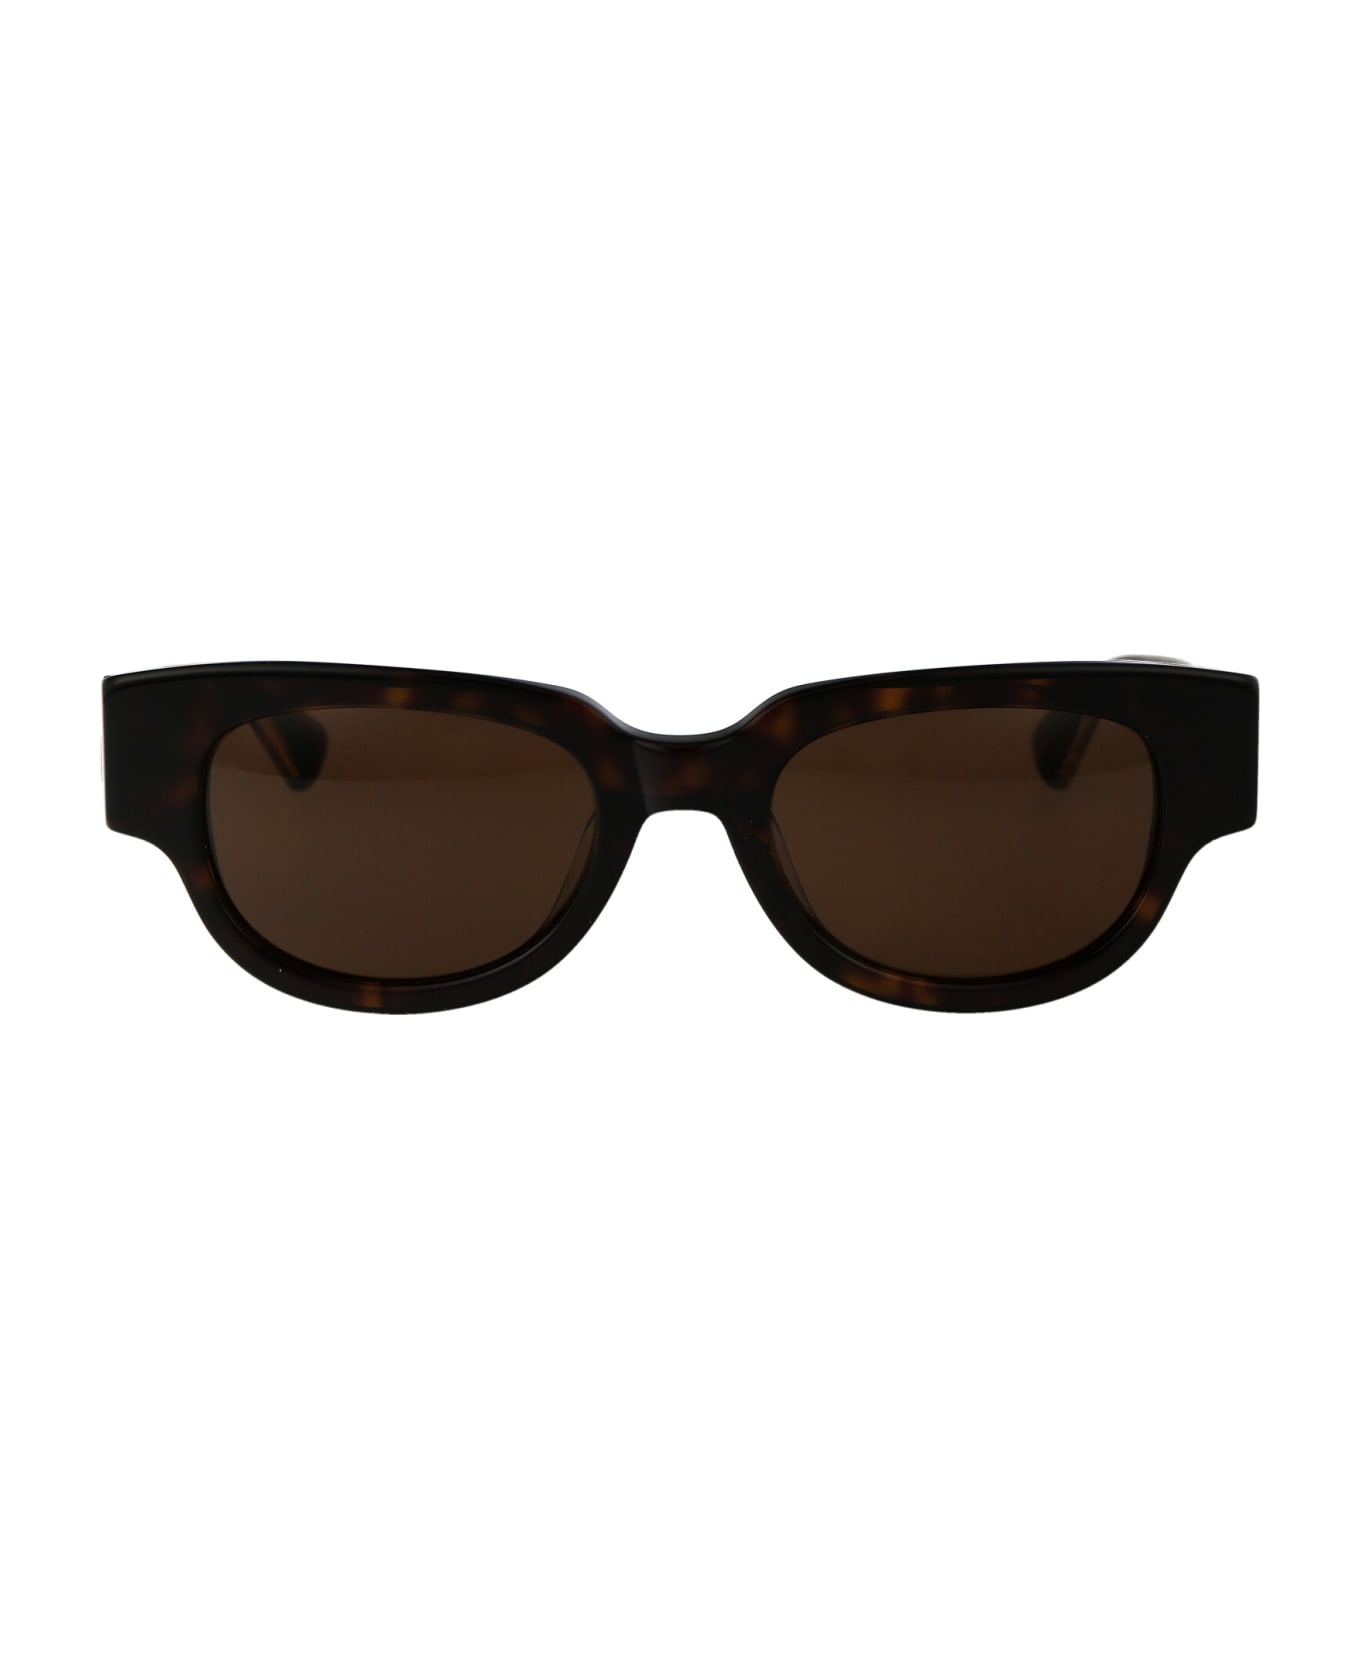 Bottega Veneta Eyewear Bv1278sa Sunglasses - 002 HAVANA CRYSTAL BROWN